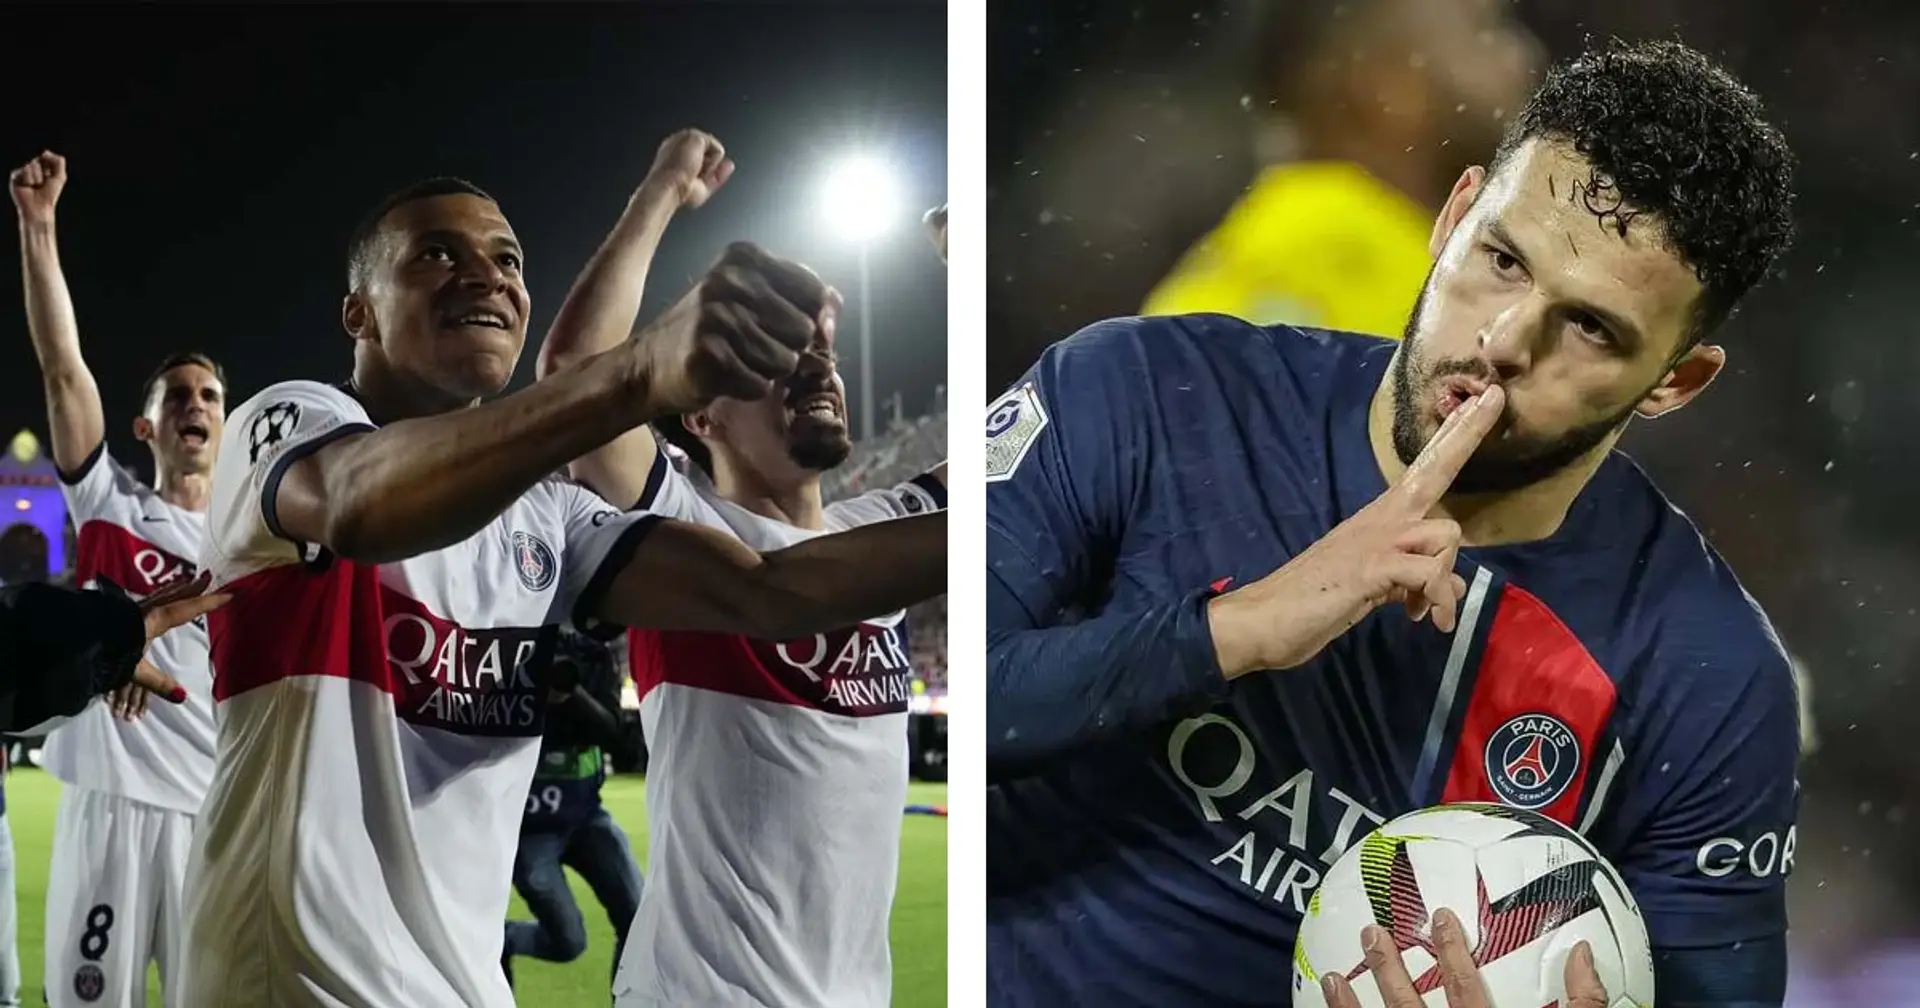 Le PSG Champion de Ligue 1 et 2 autres actus que vous auriez pu manquer